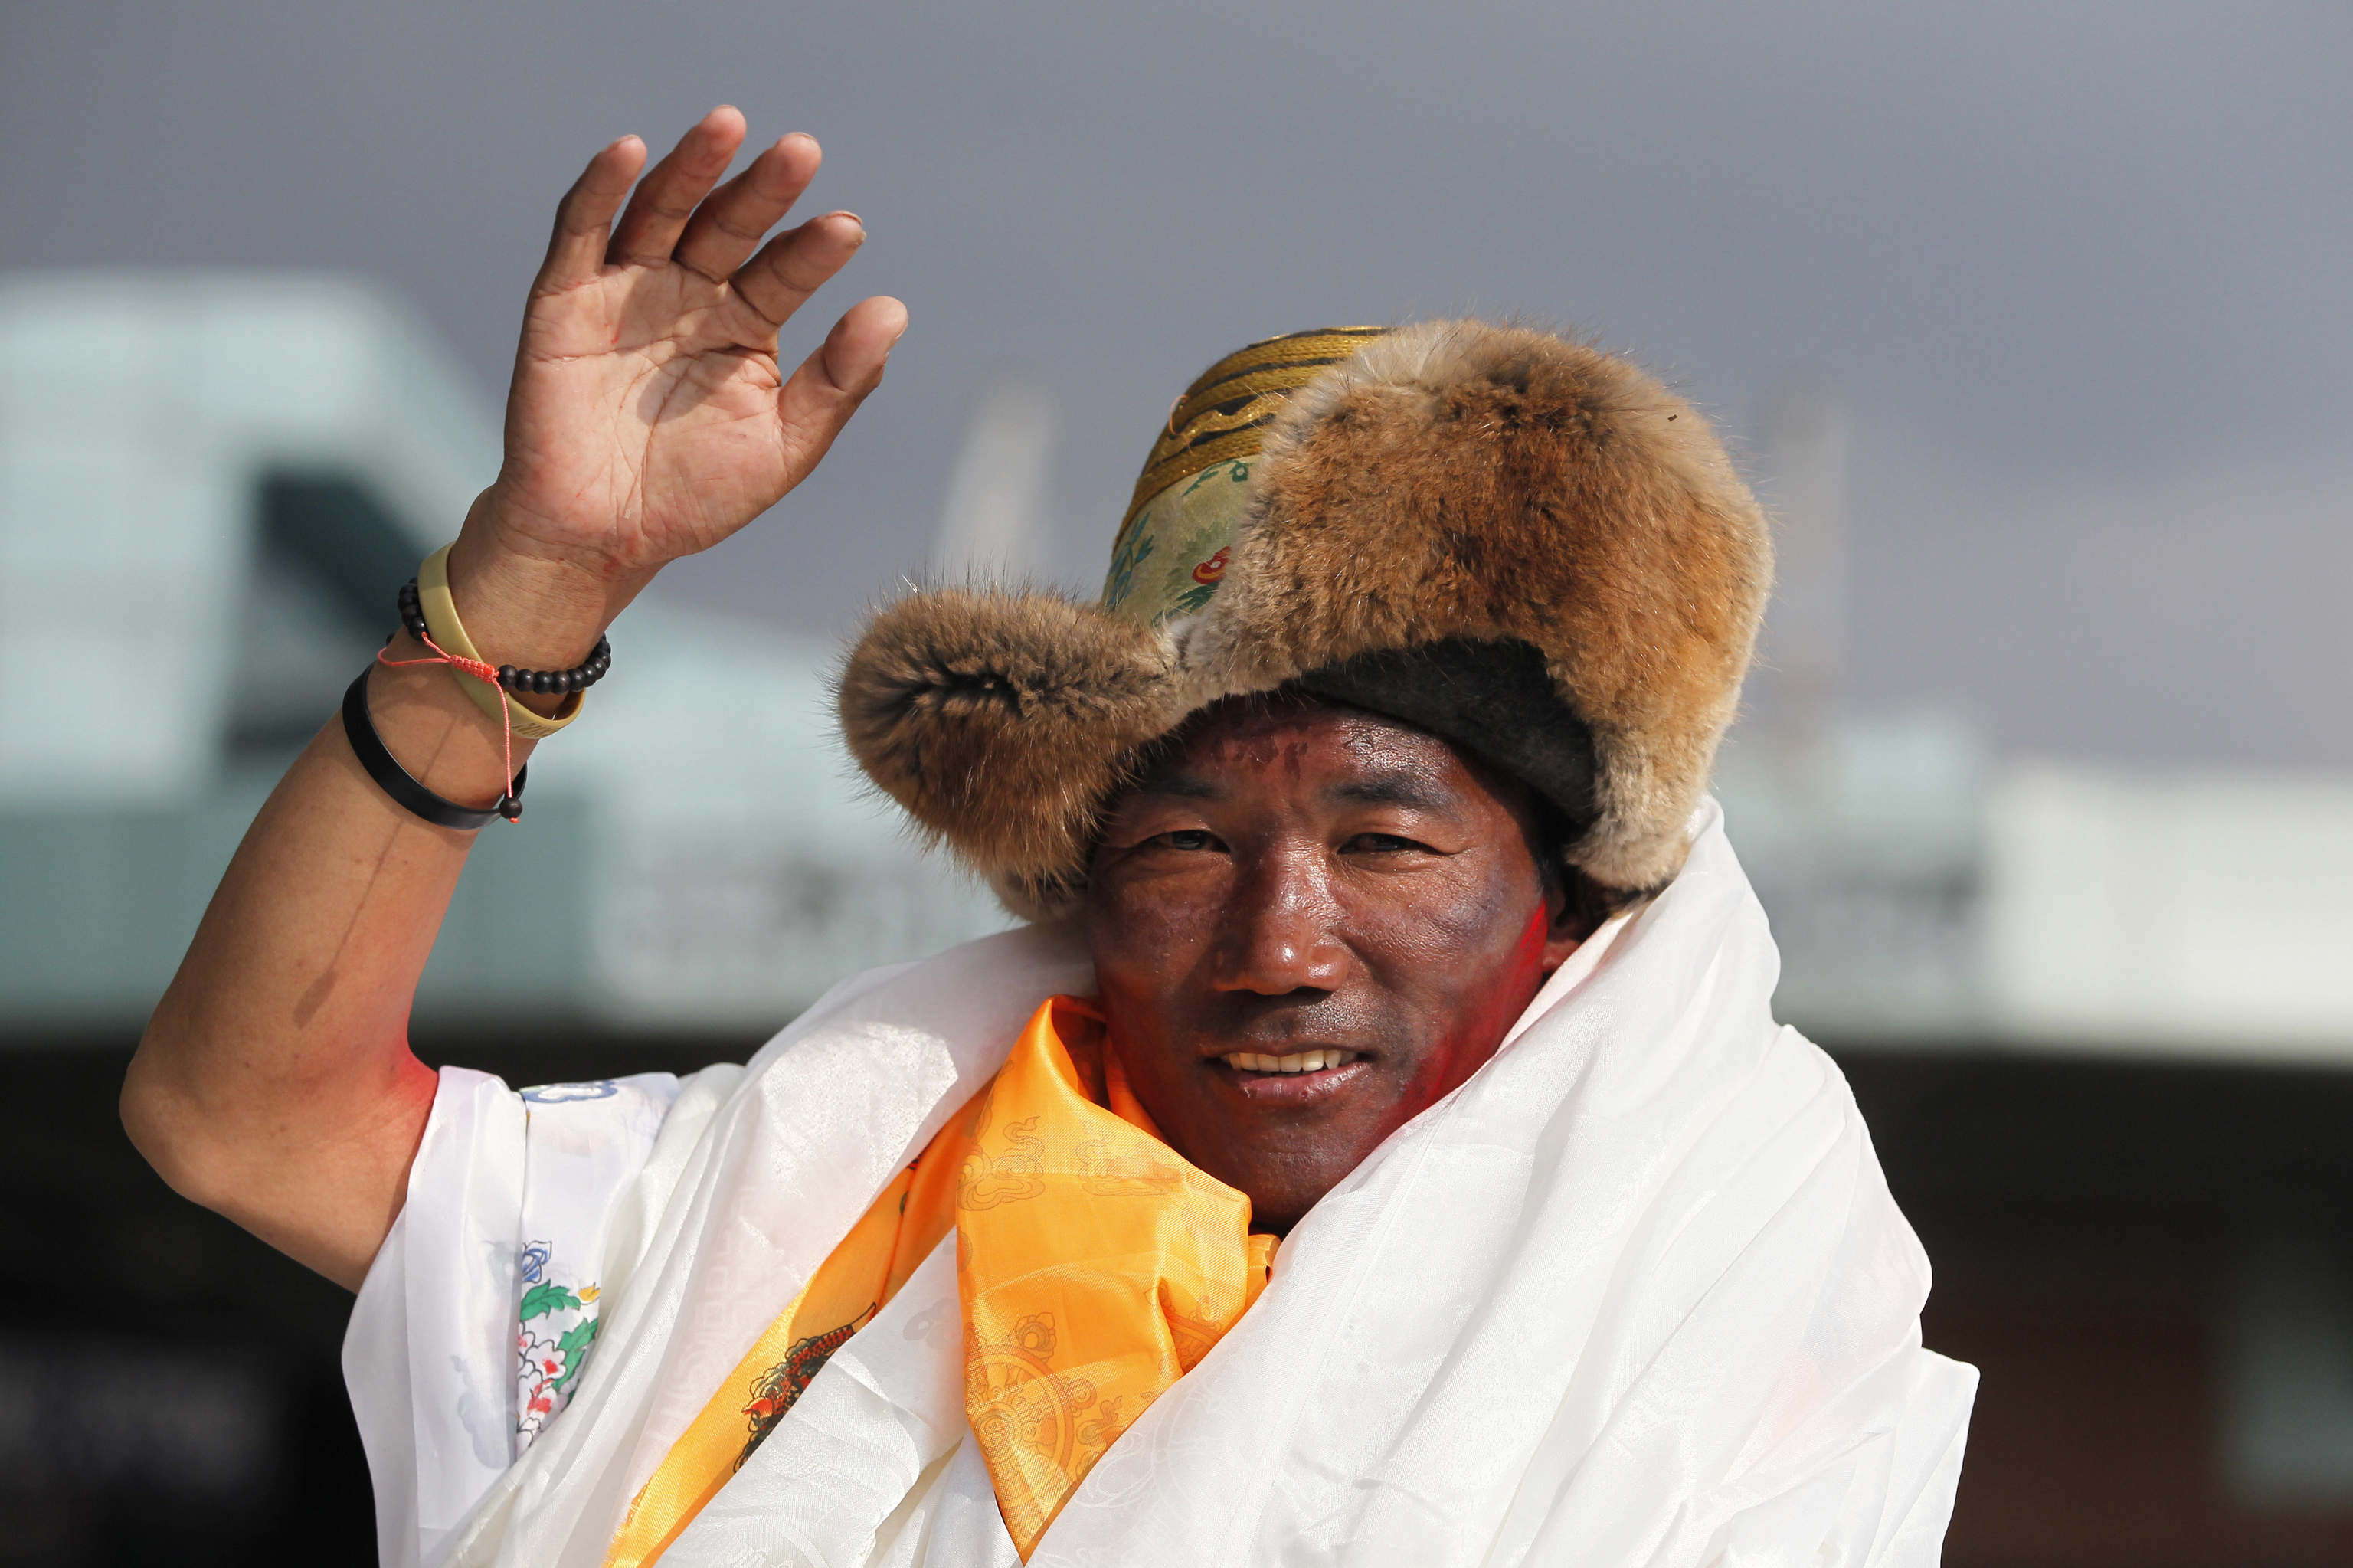 El veterano gua sherpa nepal Kami Rita en 2018.